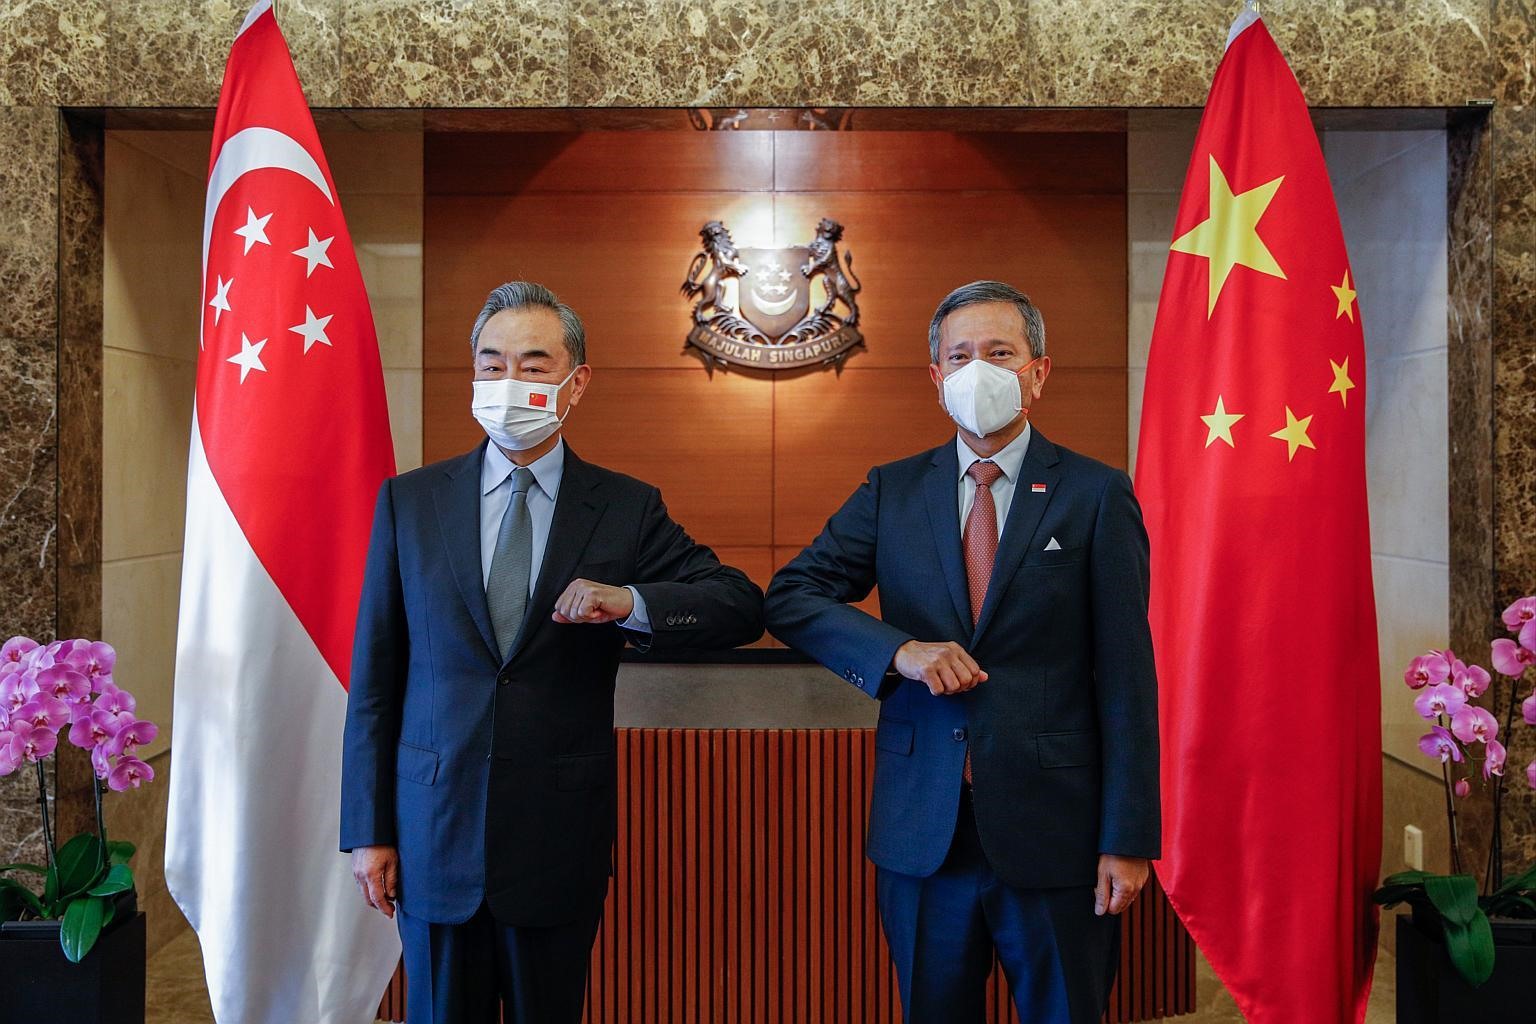 Ngoại trưởng Trung Quốc Vương Nghị gặp mặt người đồng cấp Singapore Vivian Balakrishnan. Ảnh: AP